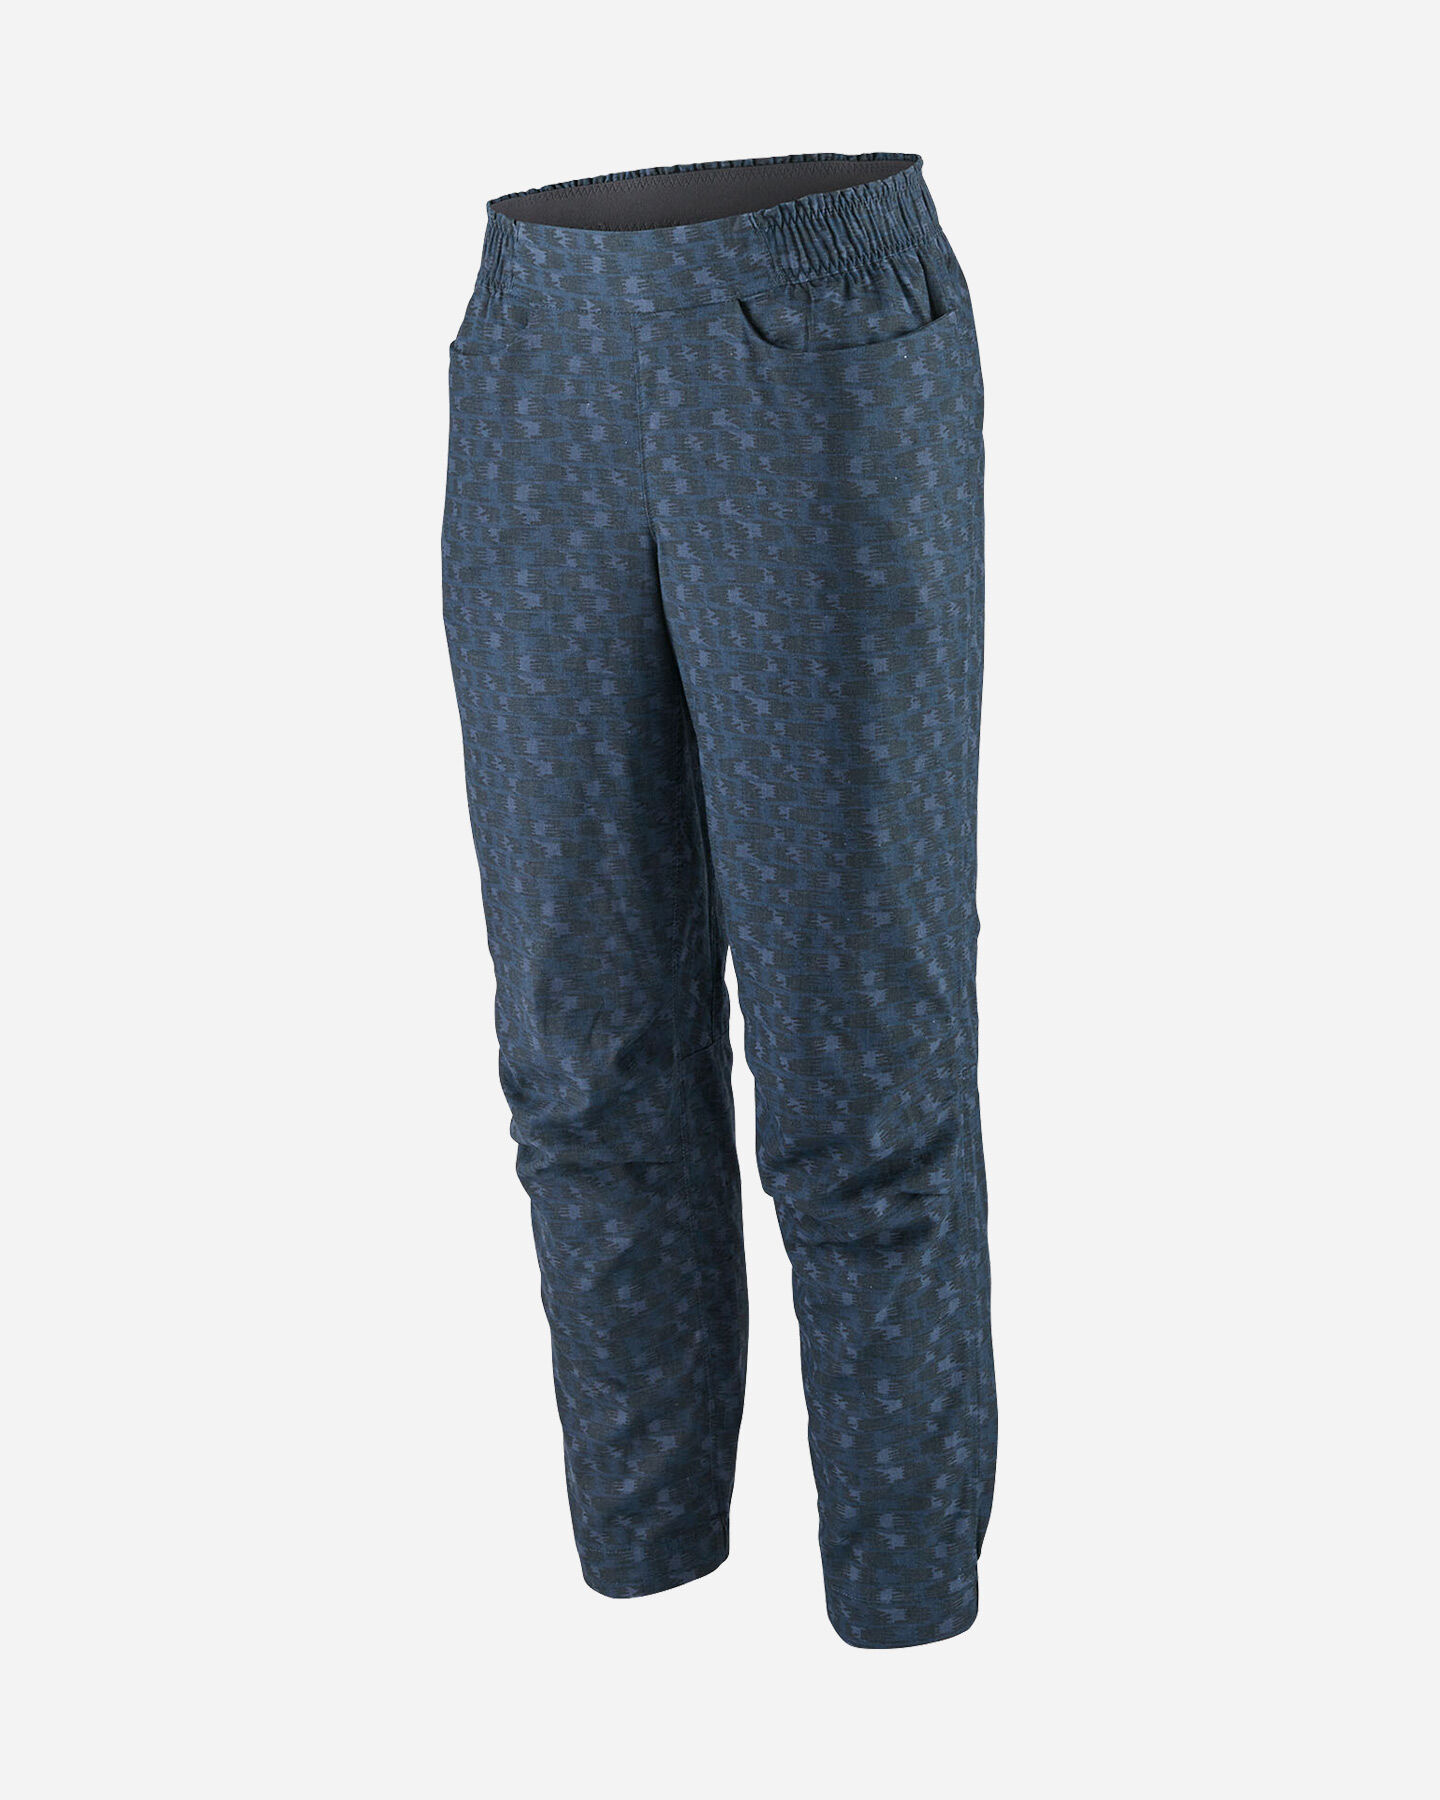  Pantalone outdoor PATAGONIA HAMPI ROCK W S5555045|IHSB|2 scatto 0